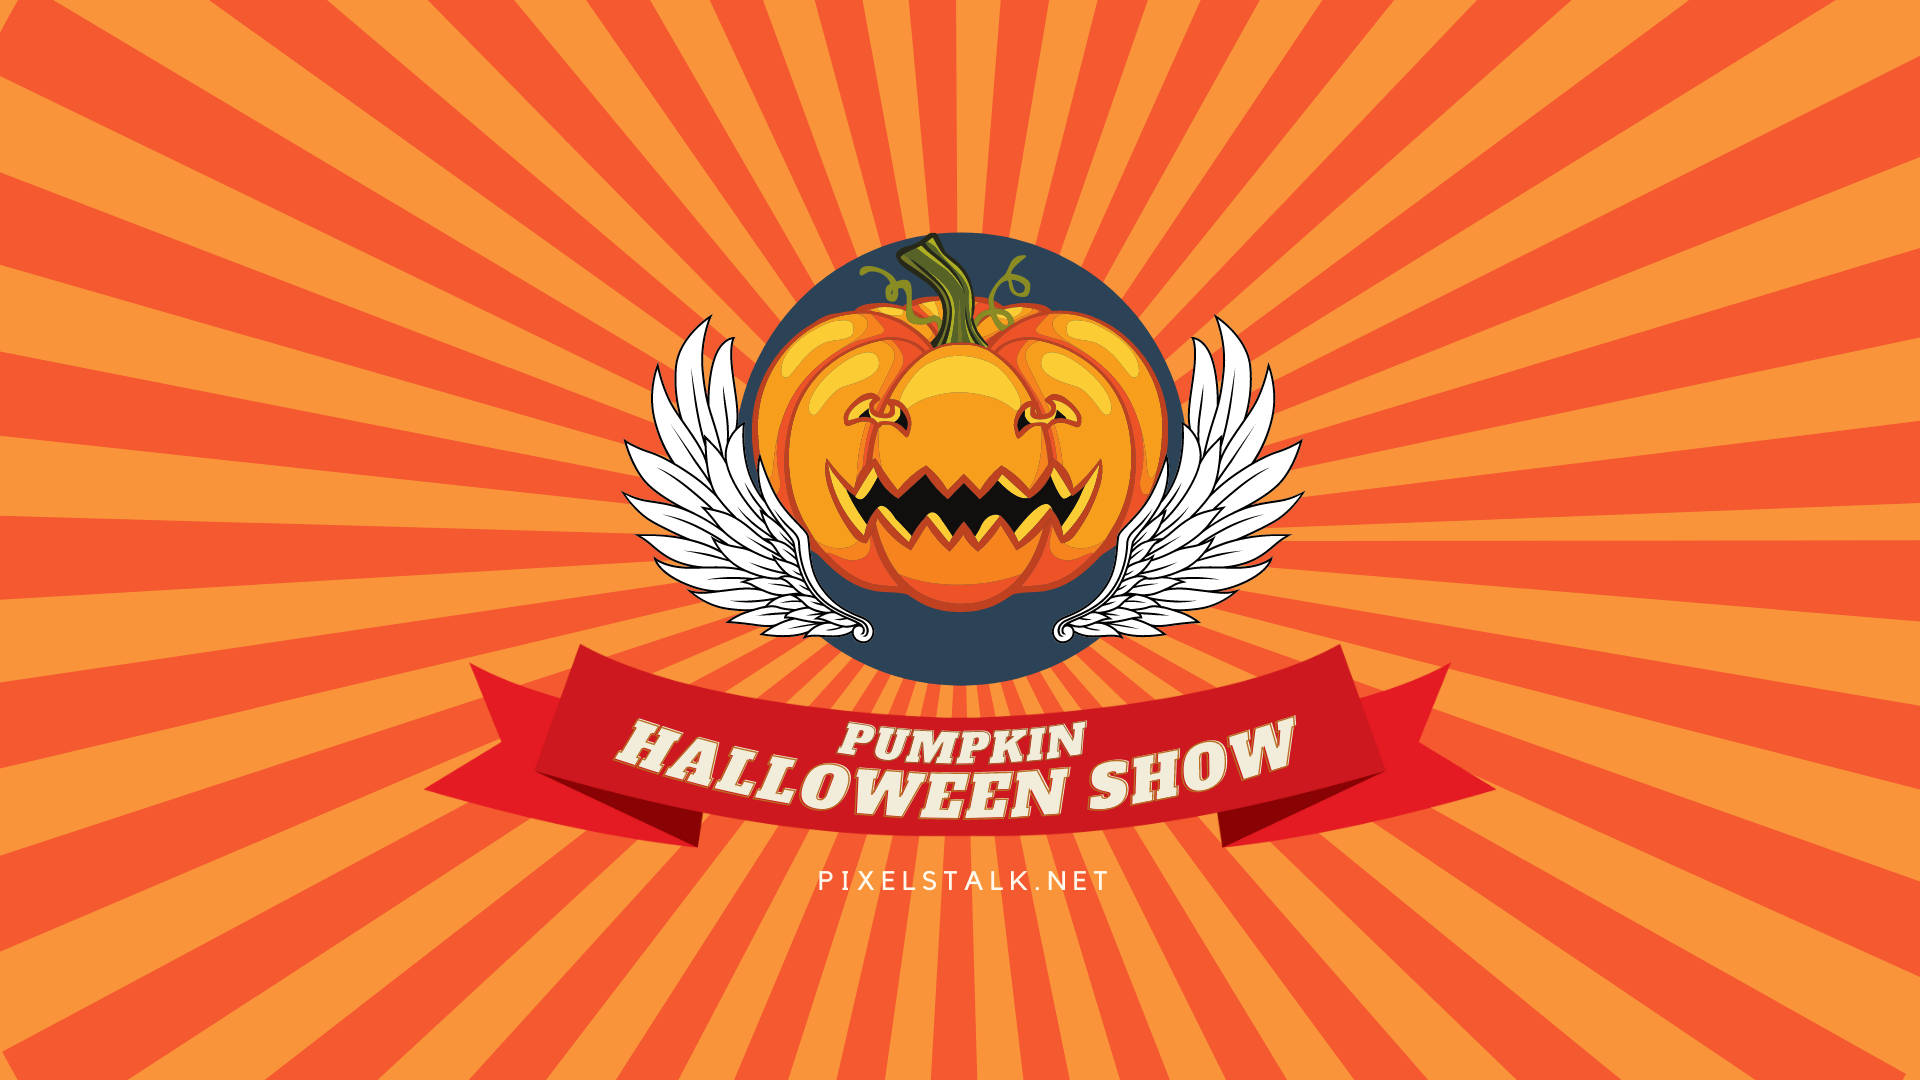 Vintage Halloween Show Pumpkin Background